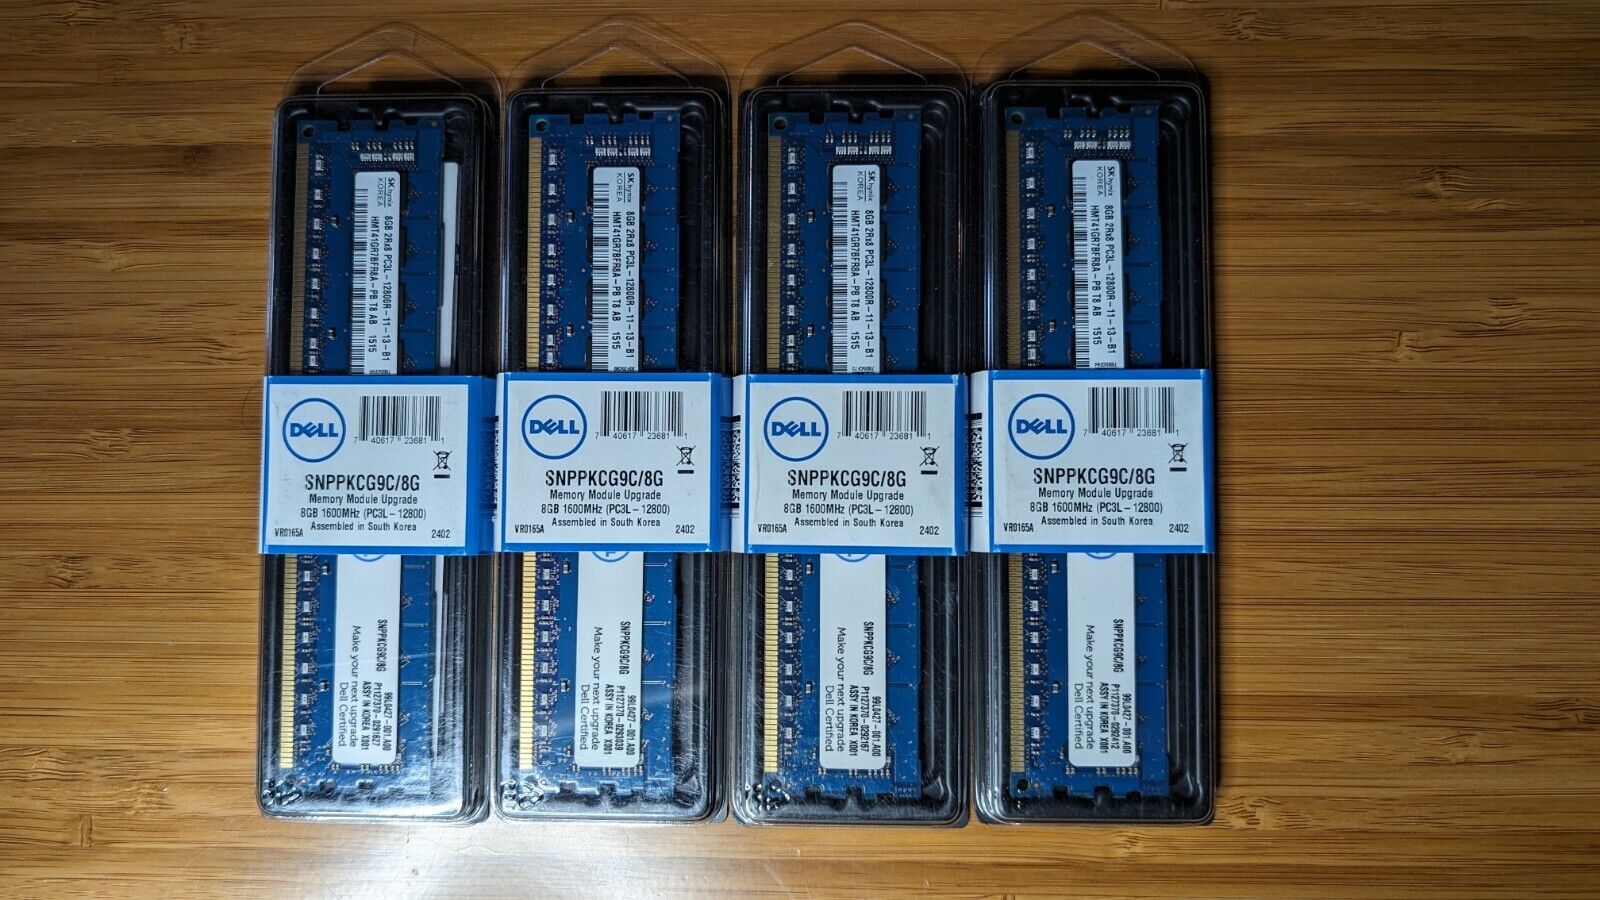 Dell Memory Module Upgrade SNPPKCG9C/8G - 8Gb 1600MHz - PC3L - 12800